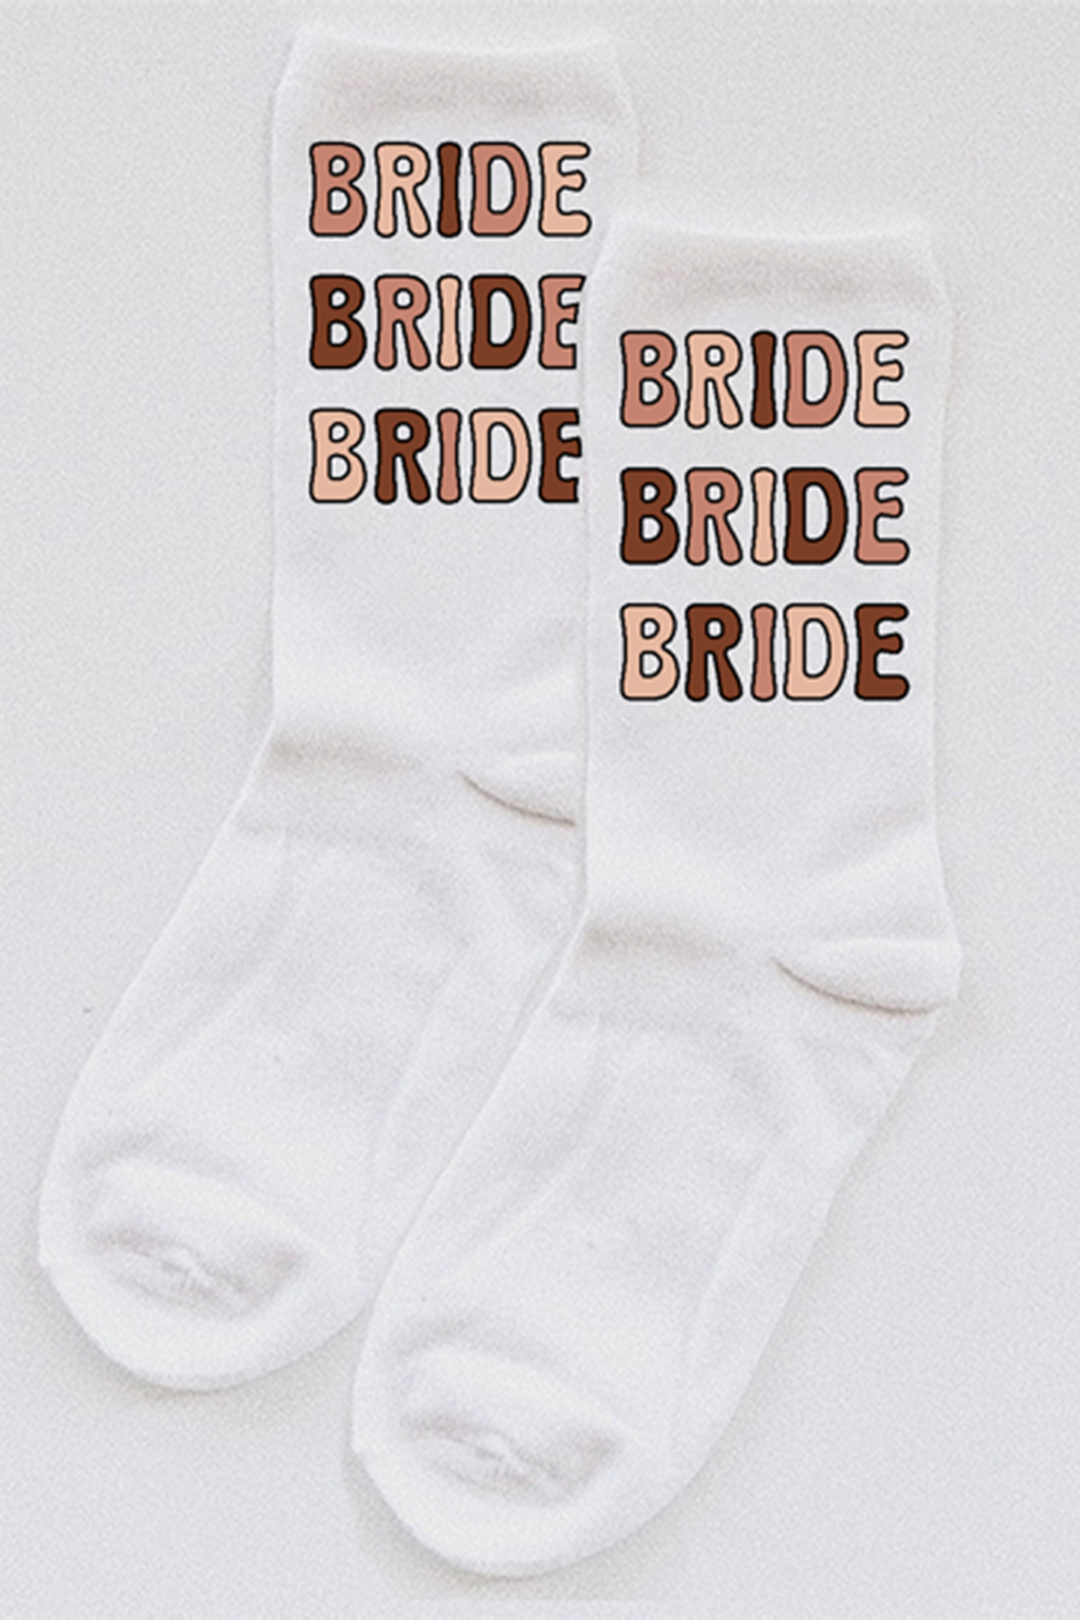 Bride Bubble Letter socks - choose your colors!